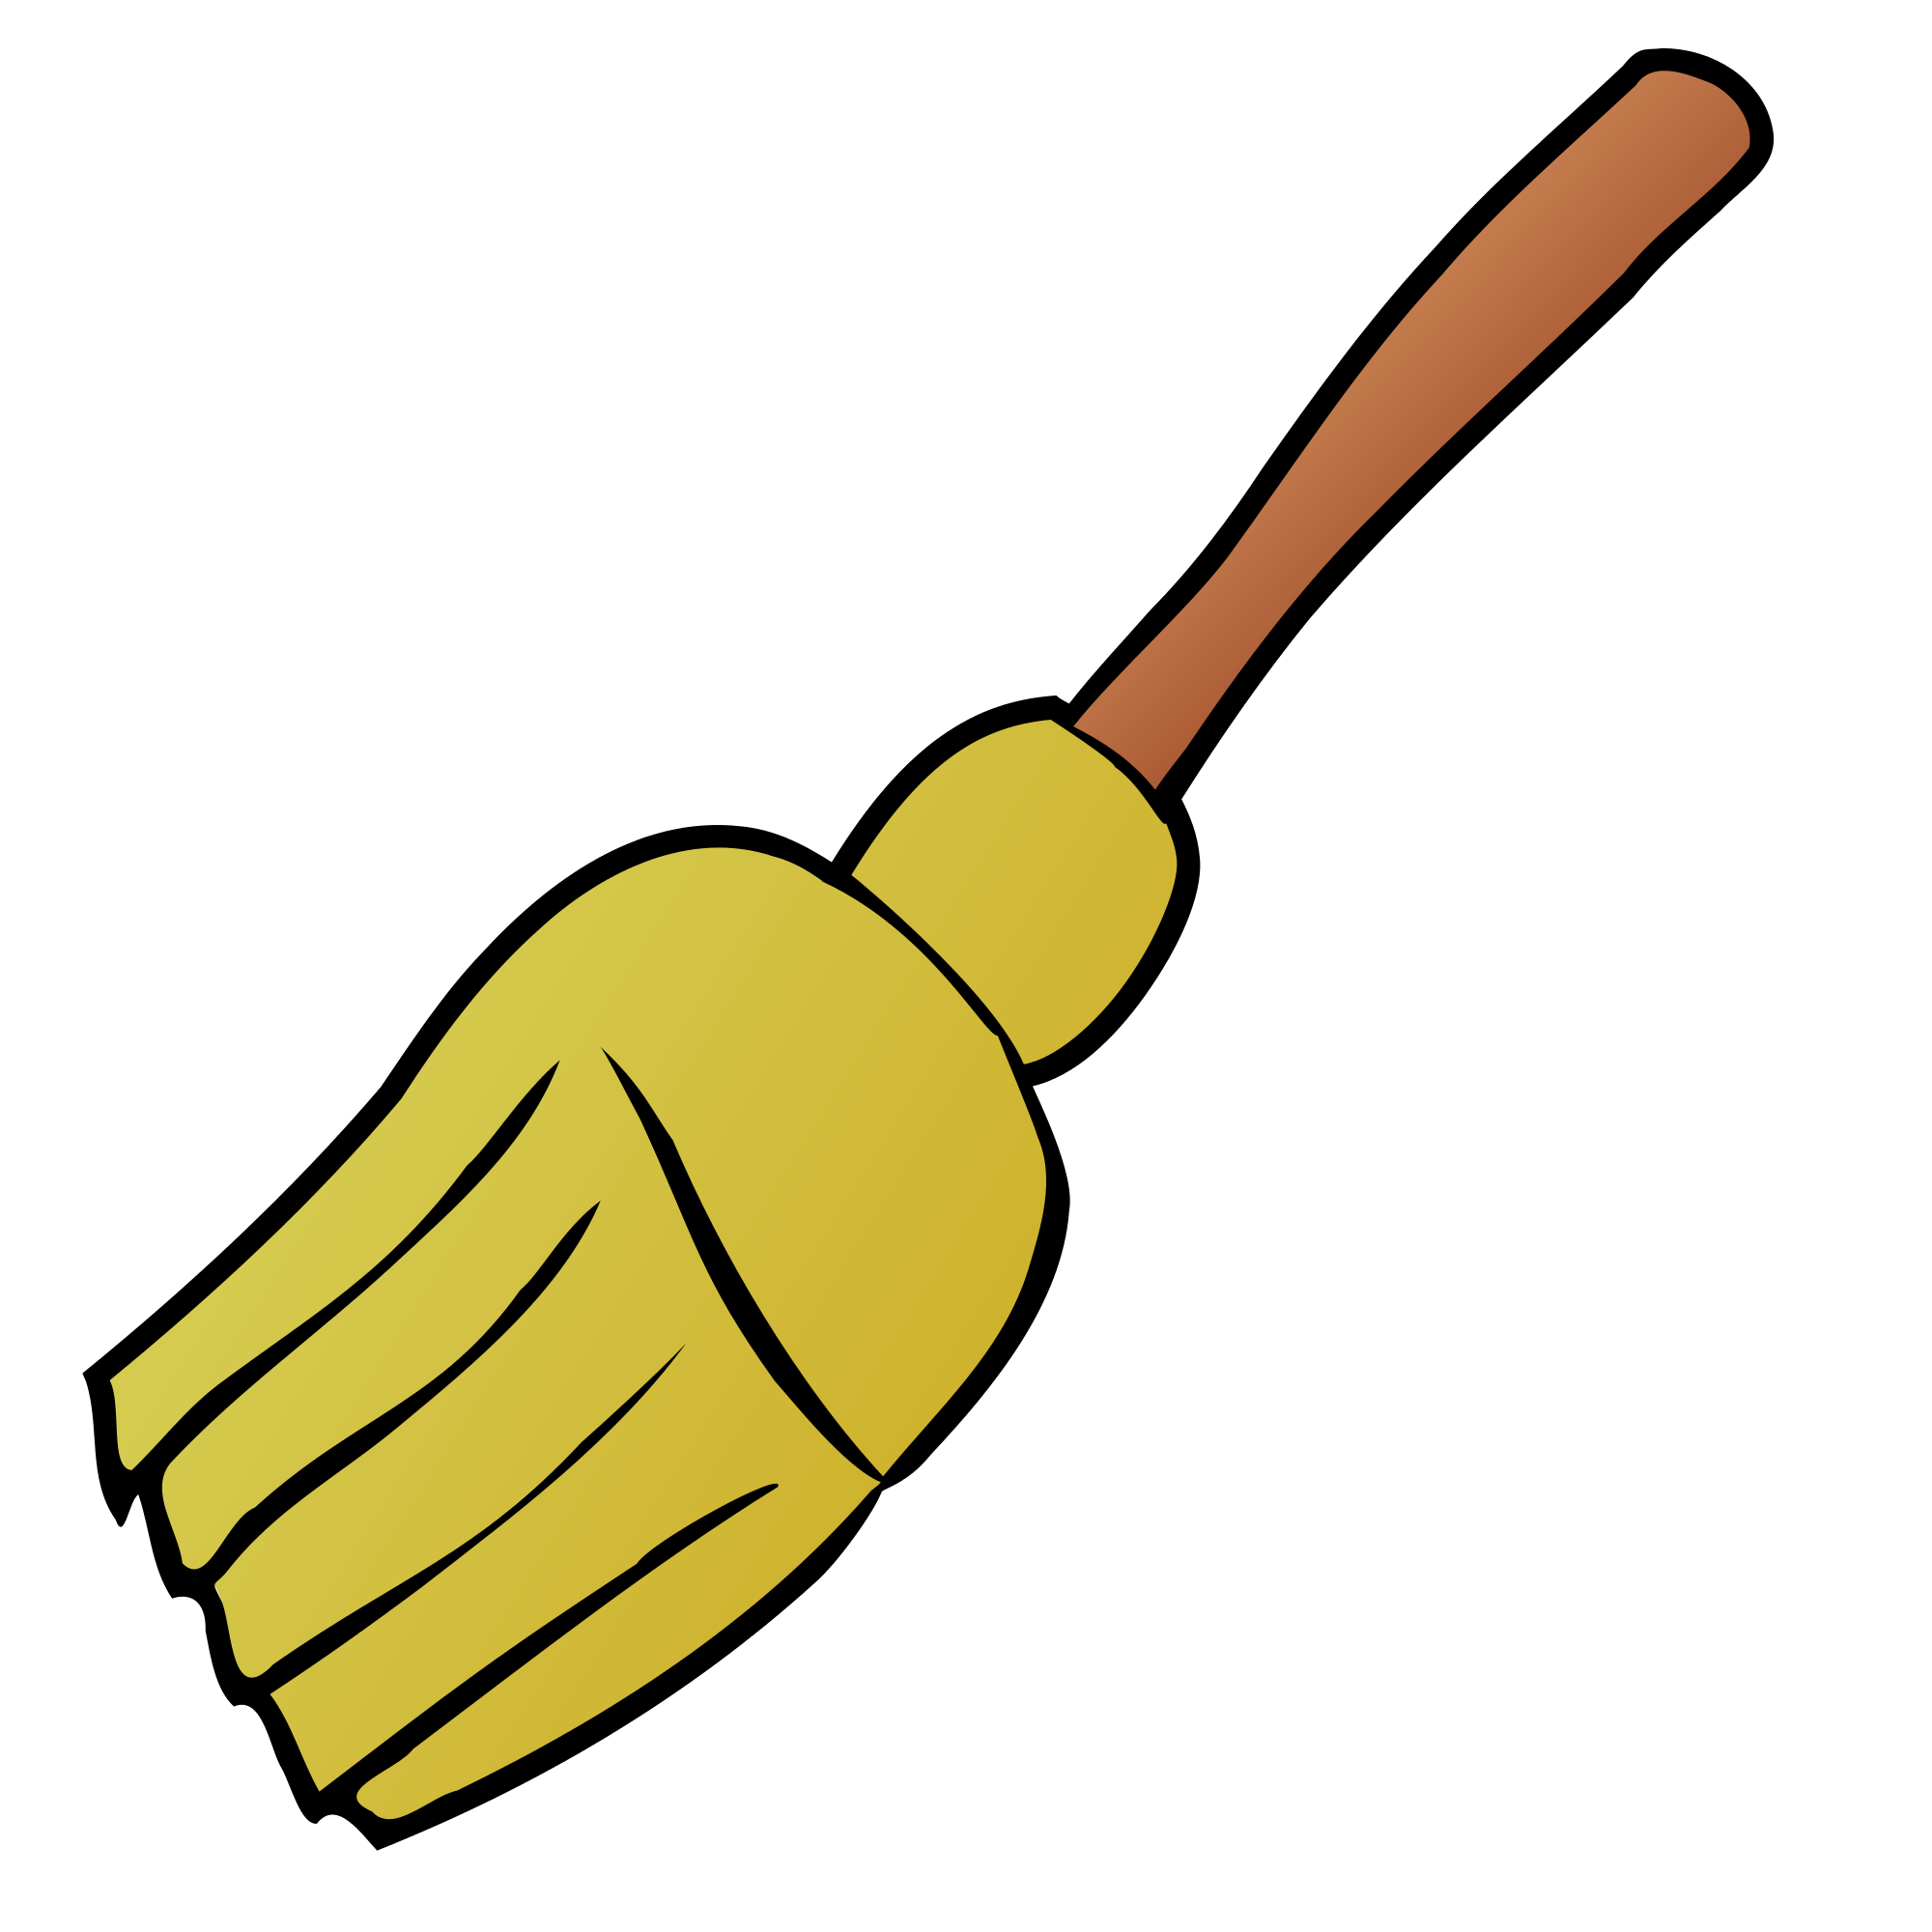 broom clipart file